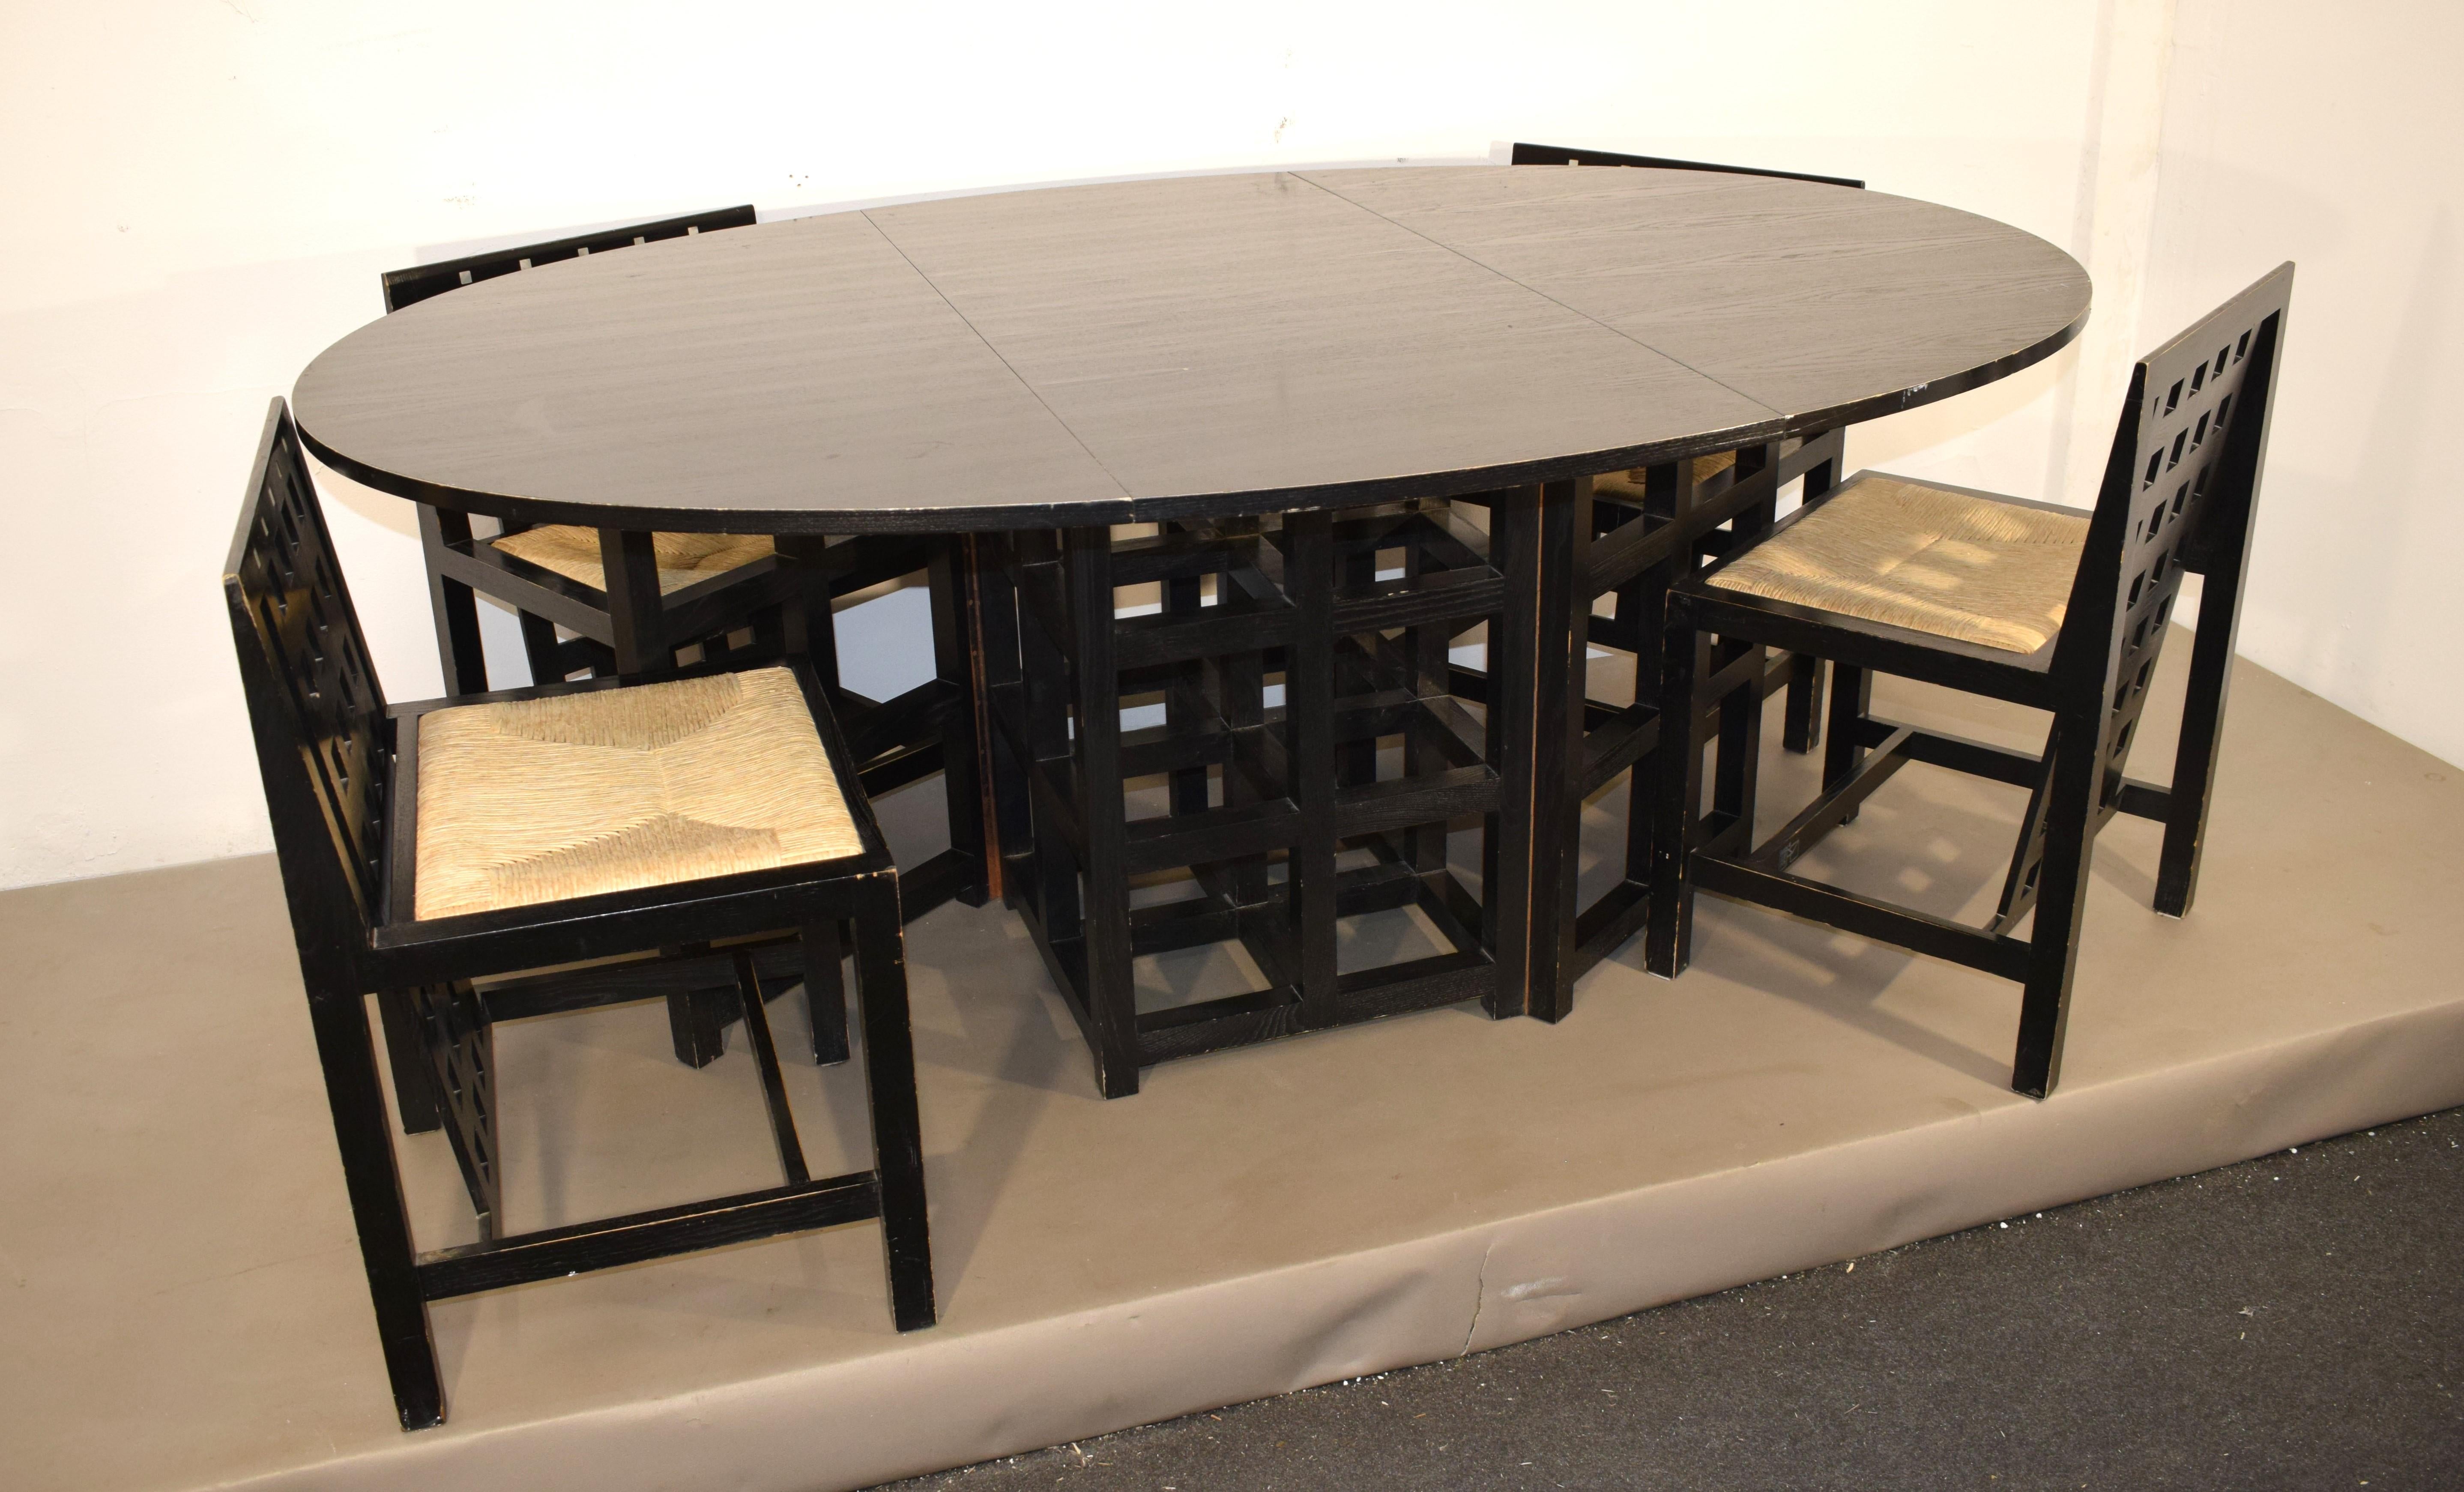 Table de salle à manger et 4 chaises par Charles Rennie Mackintosh pour Cassina, 1970.
Dimensions : 
table ouverte H= 75 cm ; L= 177 cm ; P= 125.
table fermée H= 75 cm ; L= 125 cm ; P= 58 cm.
chaise H= 75 cm ; L= 49 cm ; P= 45 cm ; assise H= 45 cm. 
